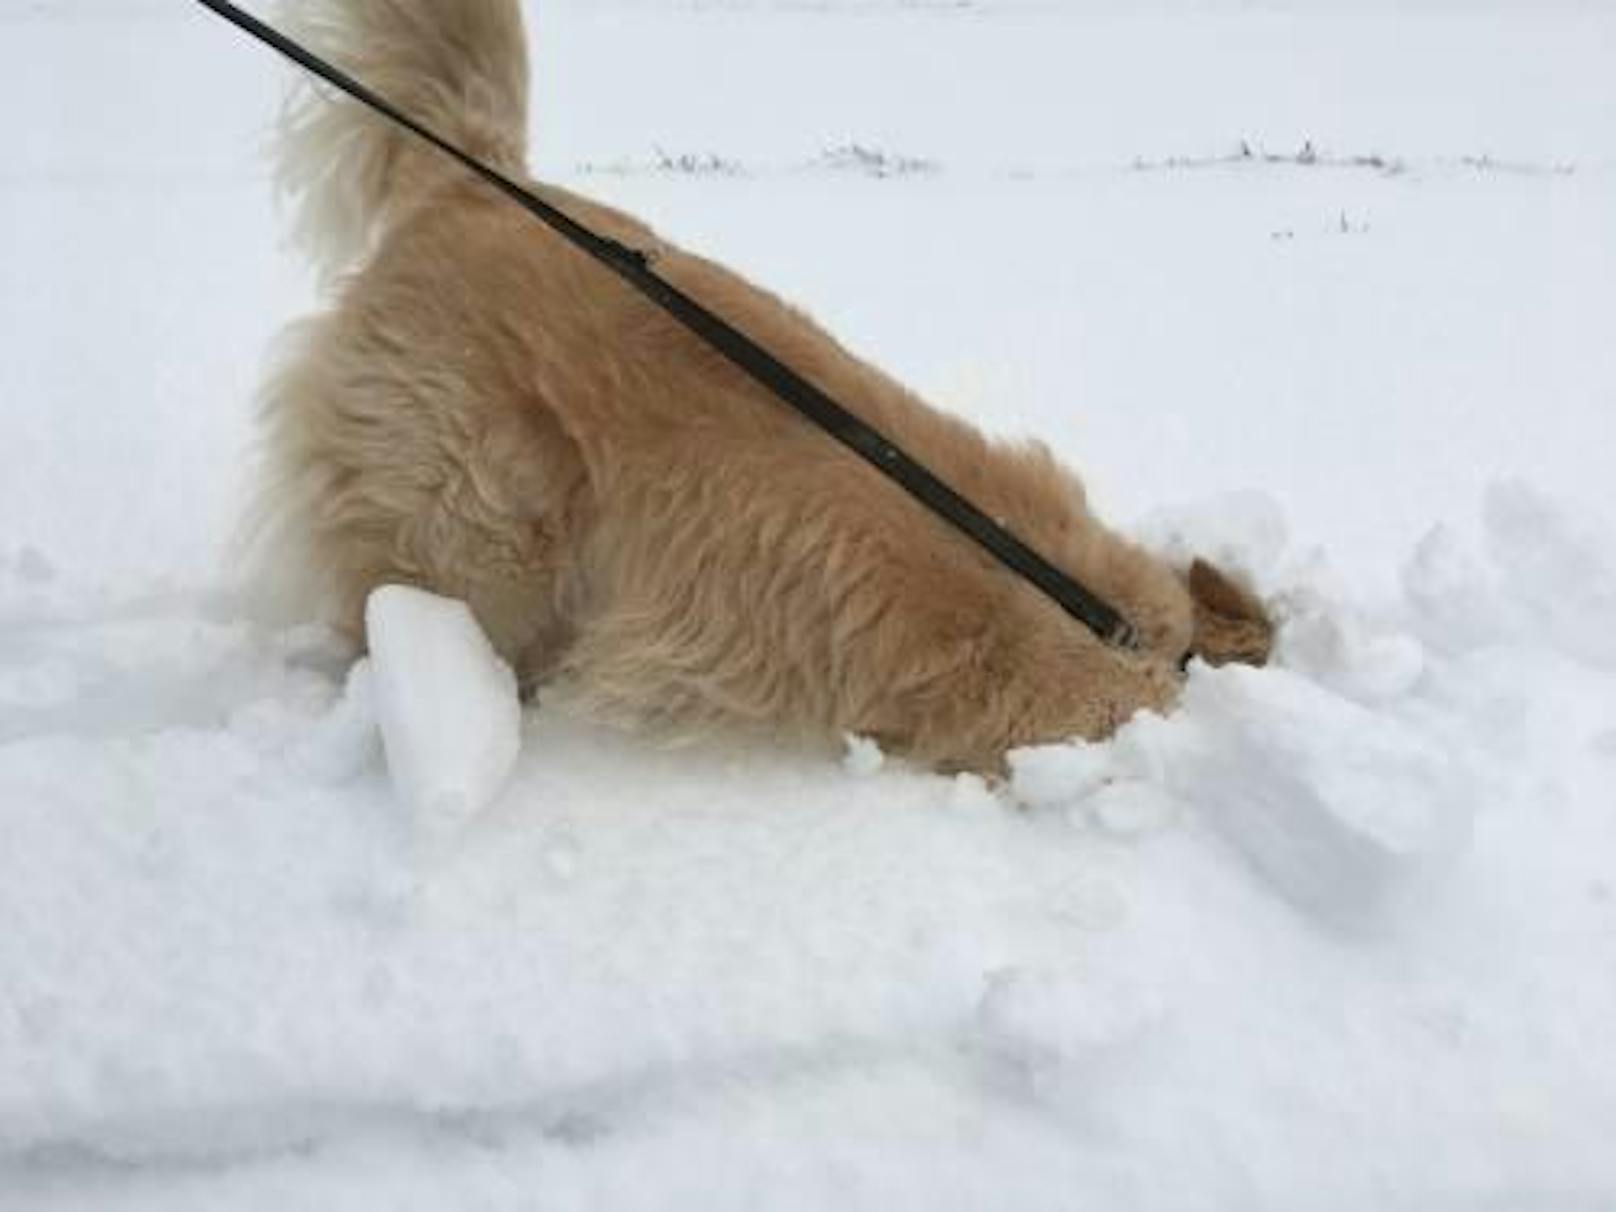 Luna liebt Schnee, am liebsten badet sie darin. Vielleicht findet man in der schneebedeckten Wiese ja noch eine Maus?